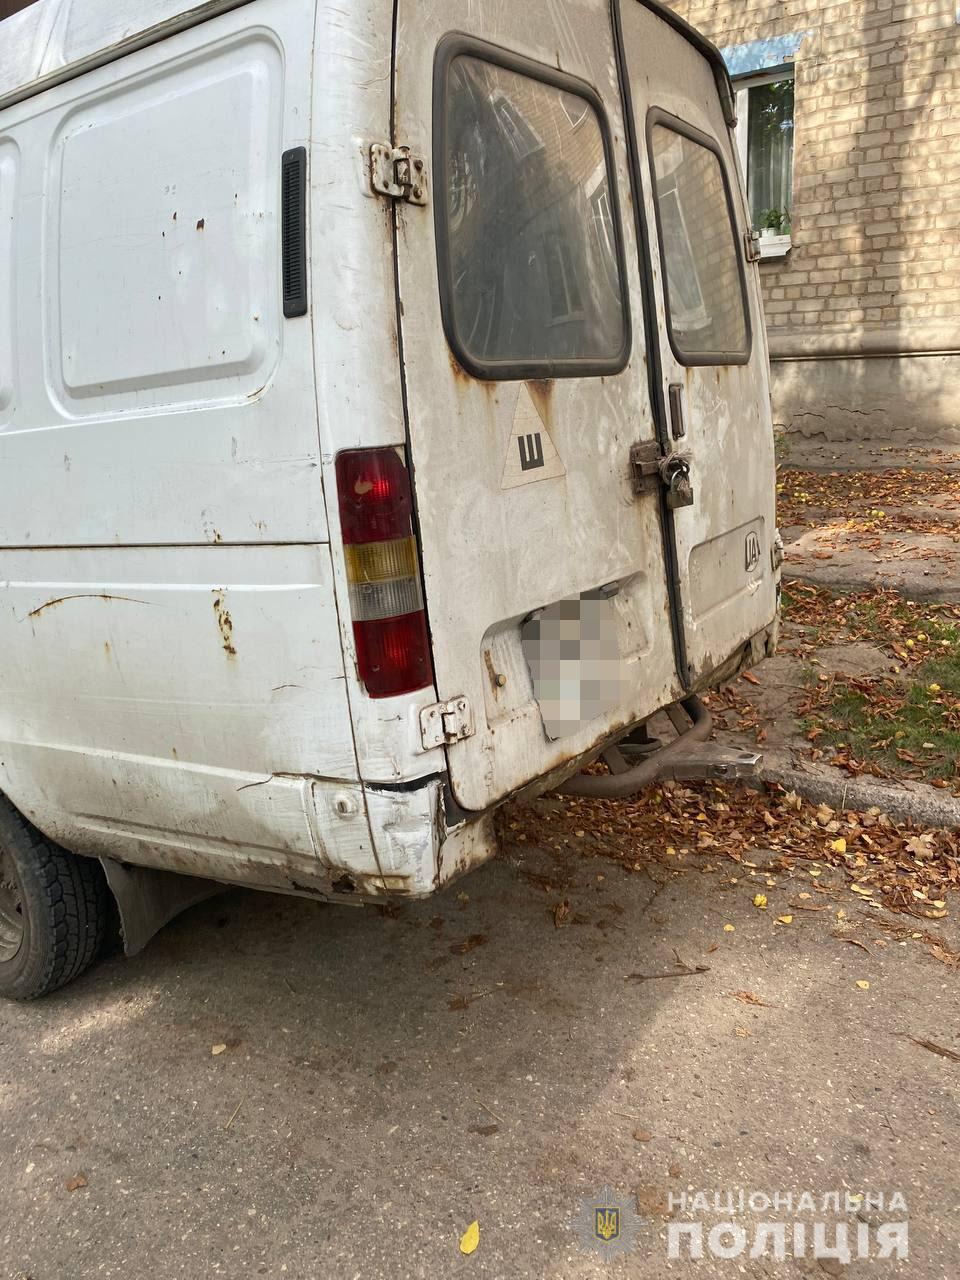 Харьковчанин украл автомобиль. который должен был отремонтировать